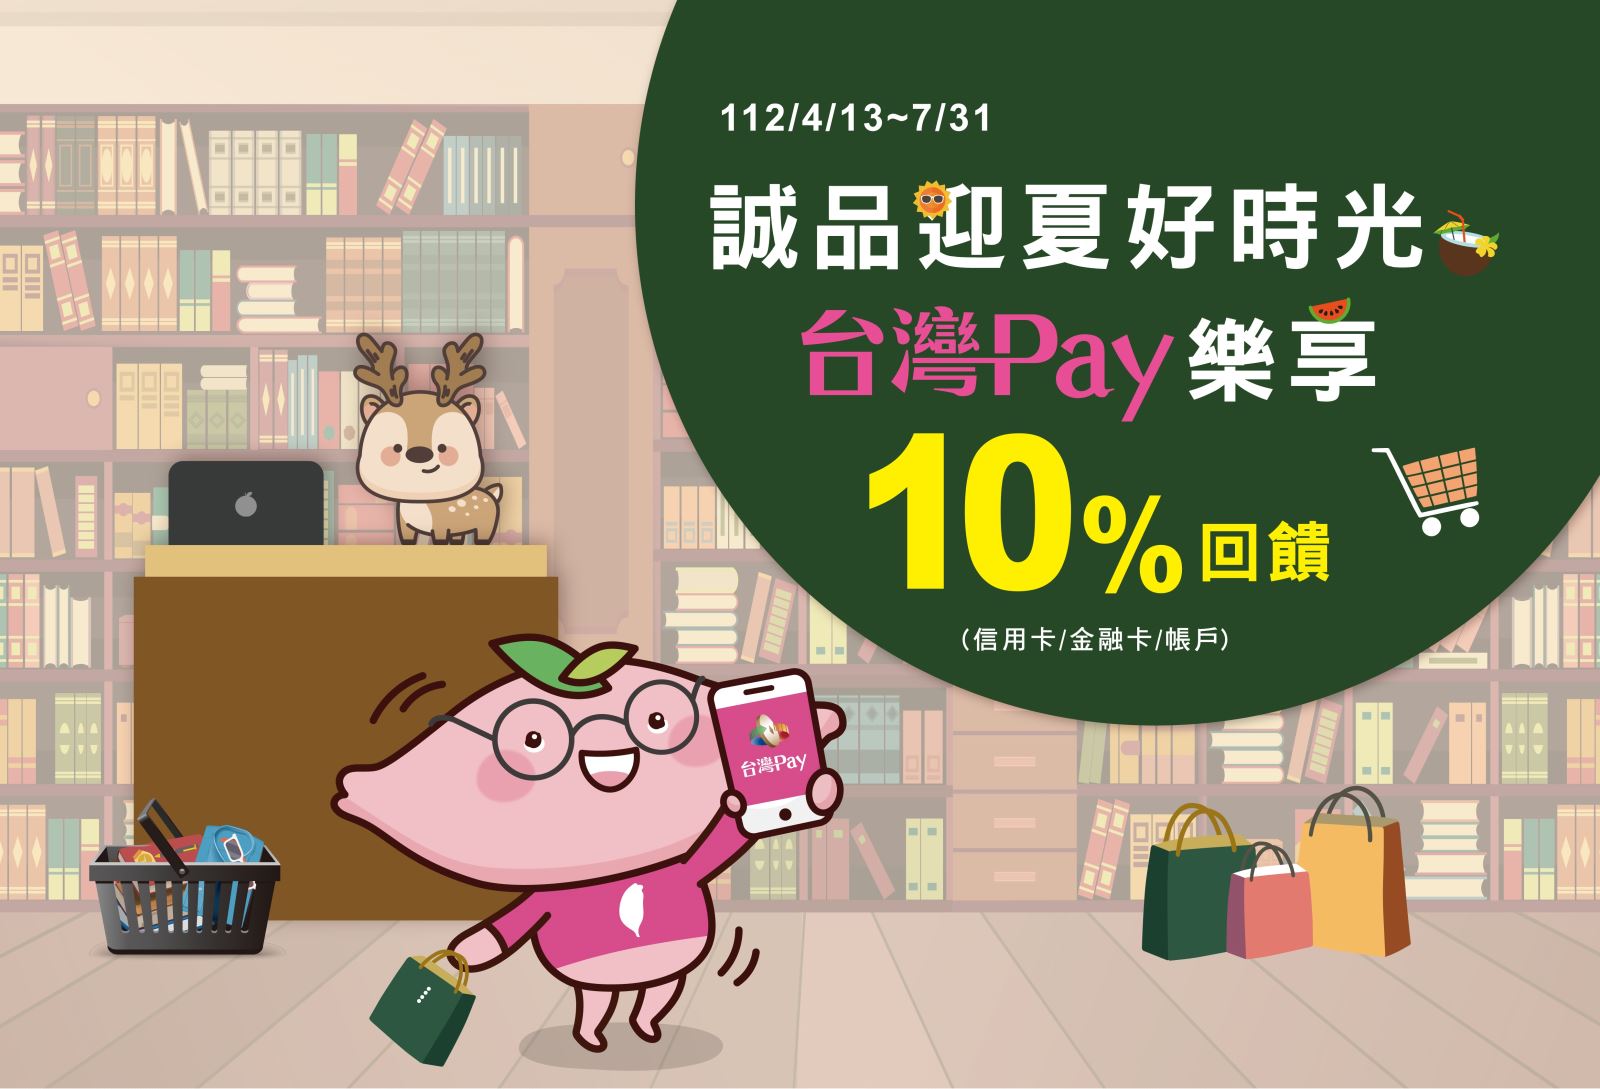 活動期間至活動地點消費出示「台灣 Pay」付款碼進行支付，單筆消費不限金額享 10%現金回饋。